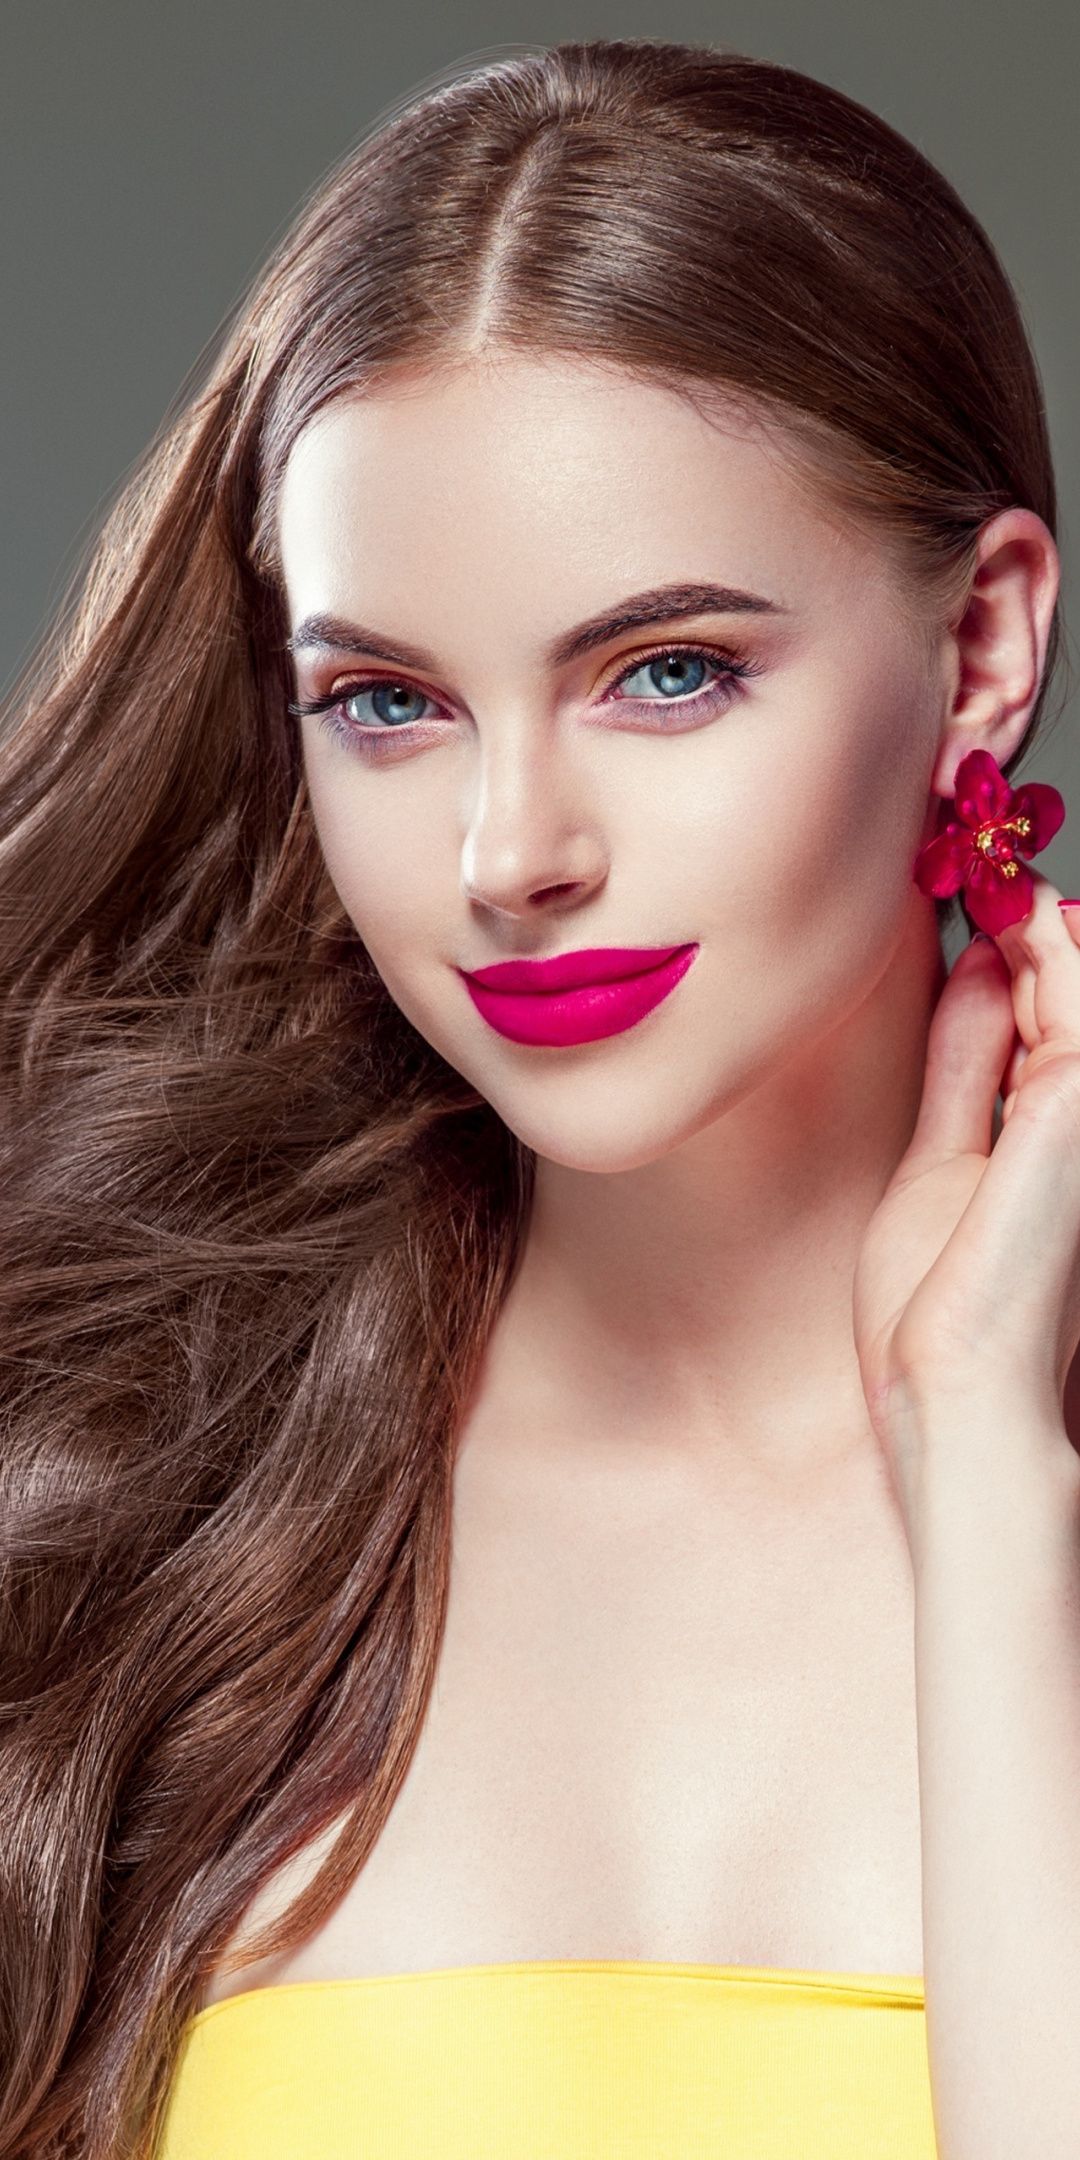 Women Face Portrait Beauty Model Wallpaper Gallery Best Fun For All